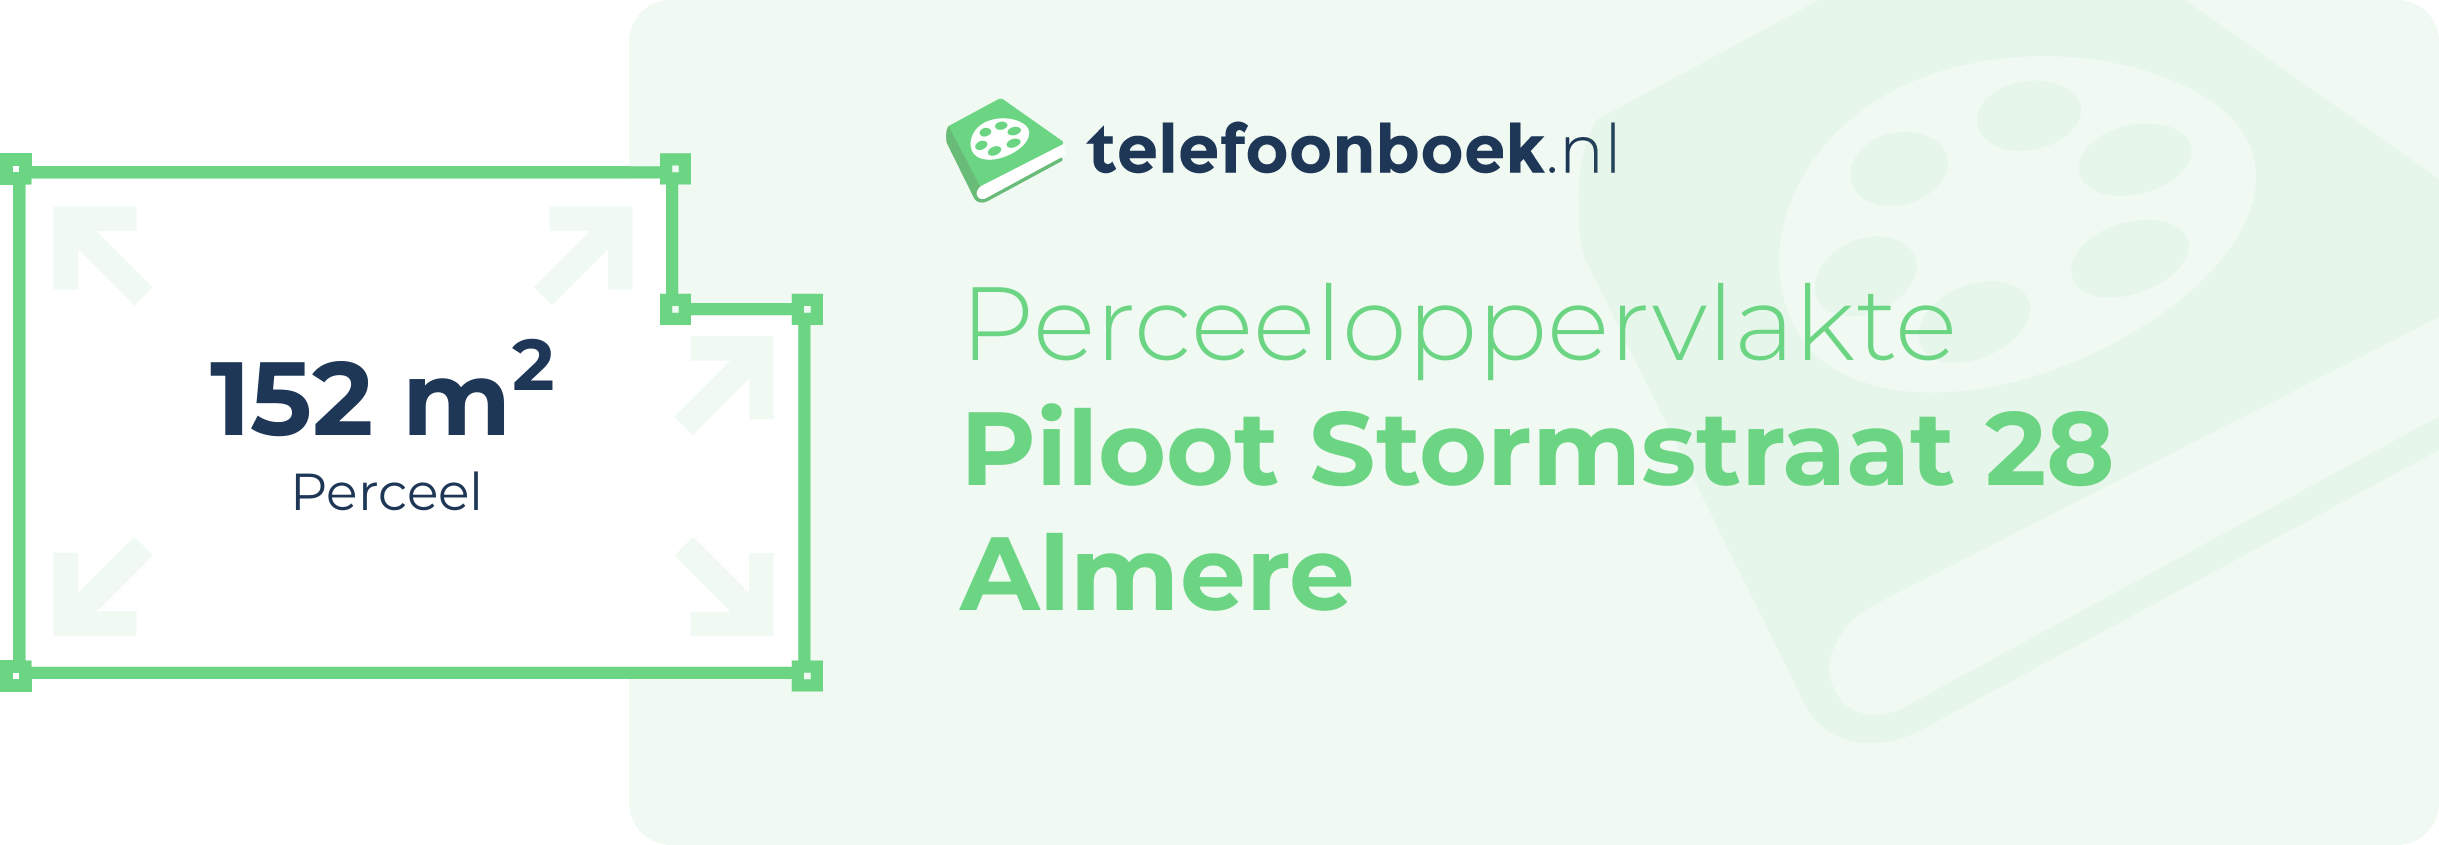 Perceeloppervlakte Piloot Stormstraat 28 Almere